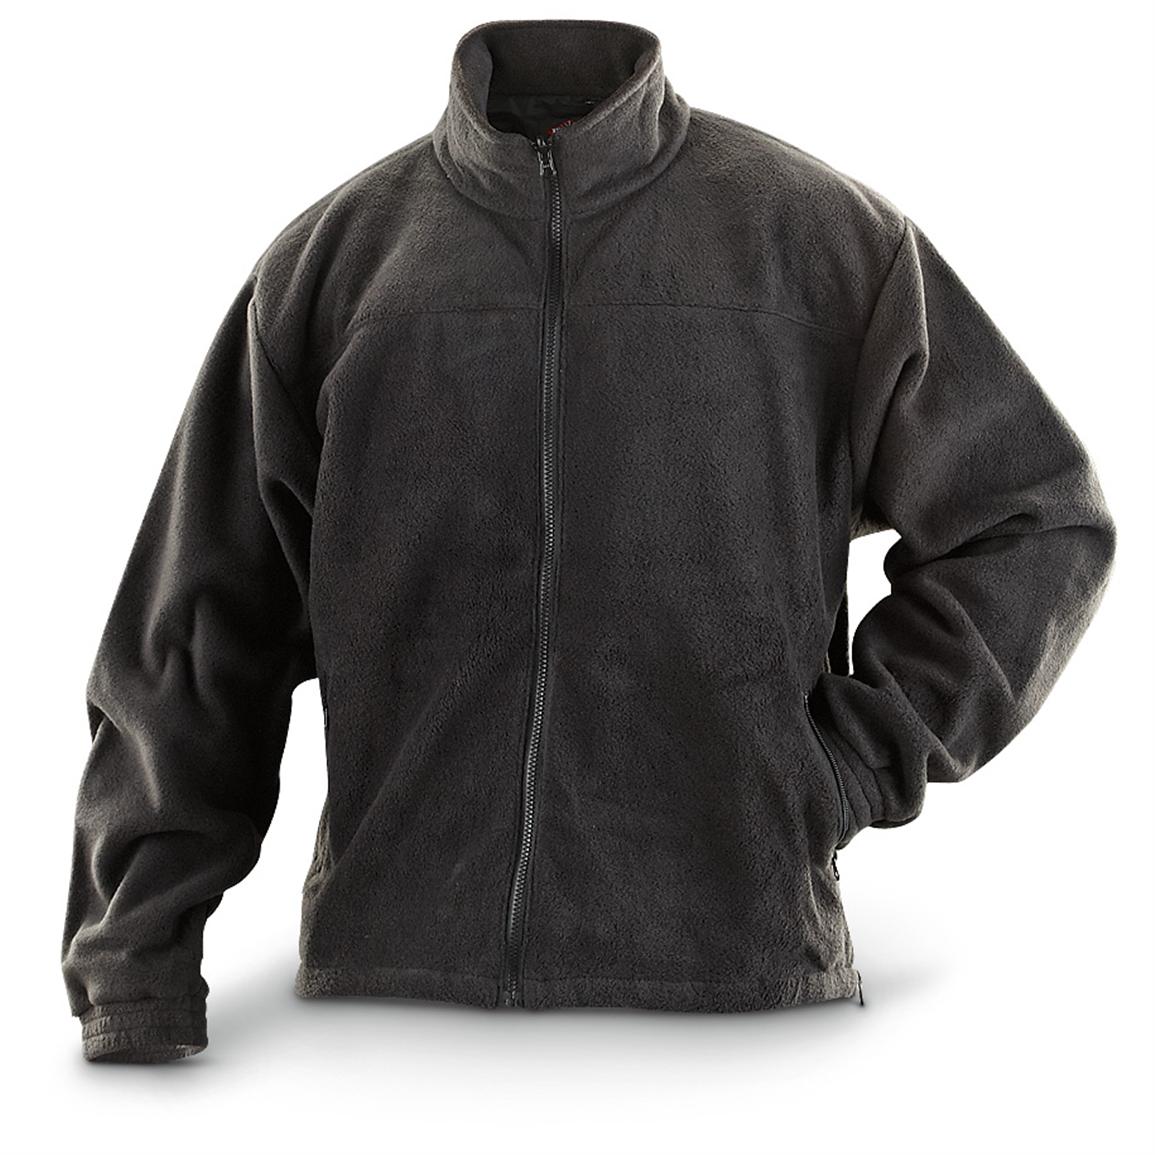 TRU - SPEC® 24/7 Series® Fleece Jacket, Black - 228974, Insulated ...